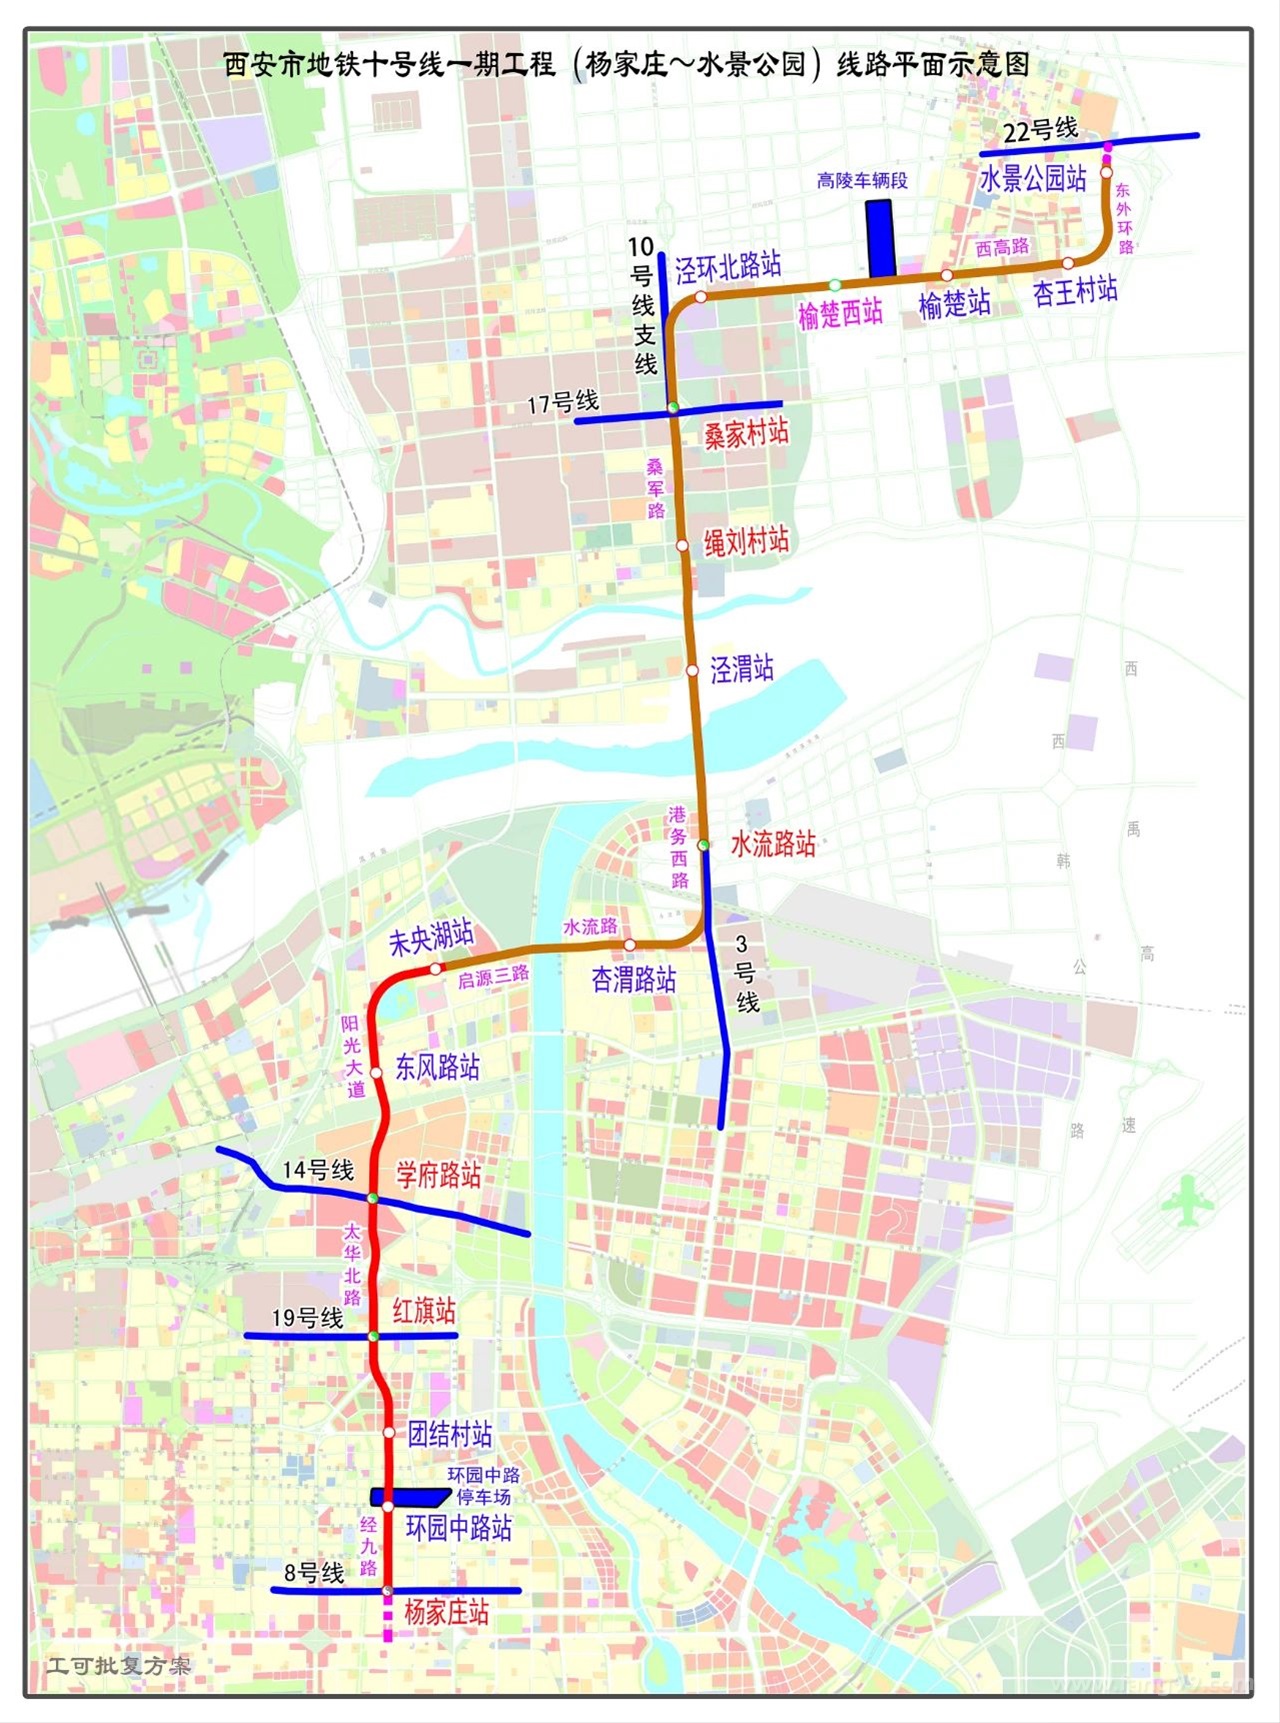 6969日前,西安市轨道交通集团发布了西安地铁在建线路最新情况与